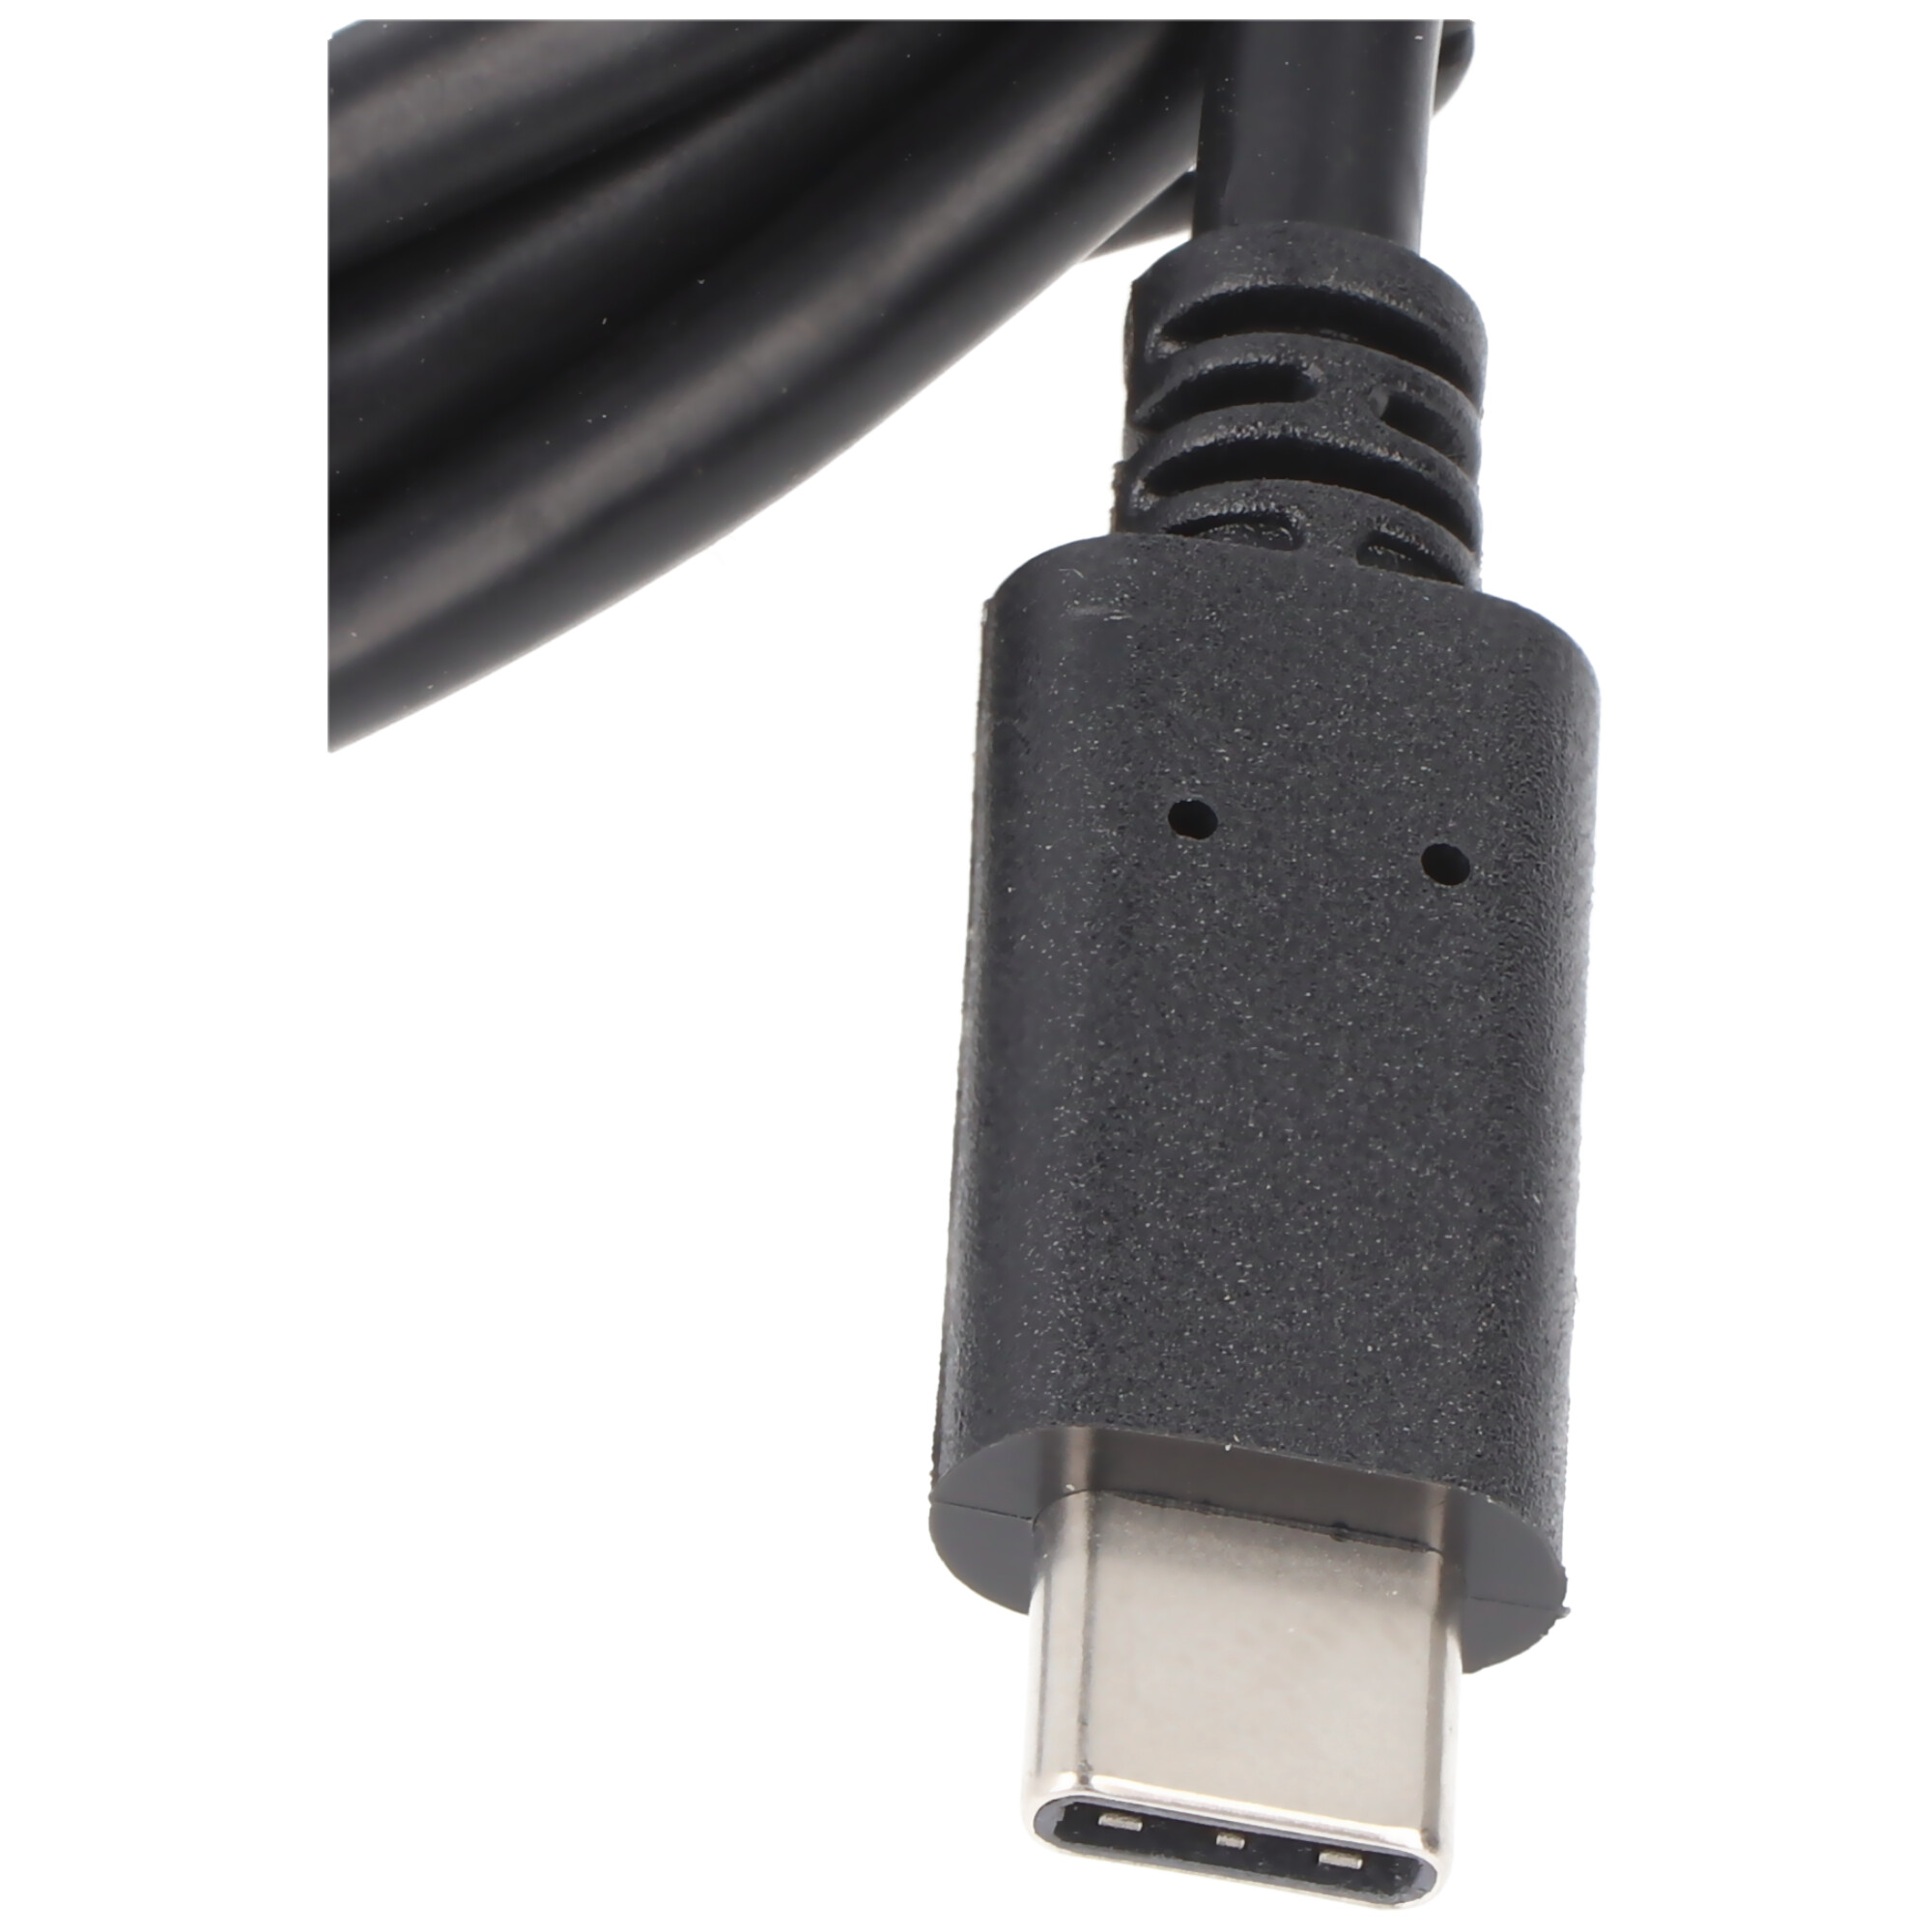 USB-C Stecker auf USB-C Stecker, USB-C 2.0, USB Datenkabel mit Ladefunktion für alle Geräte mit USB-C Anschluss